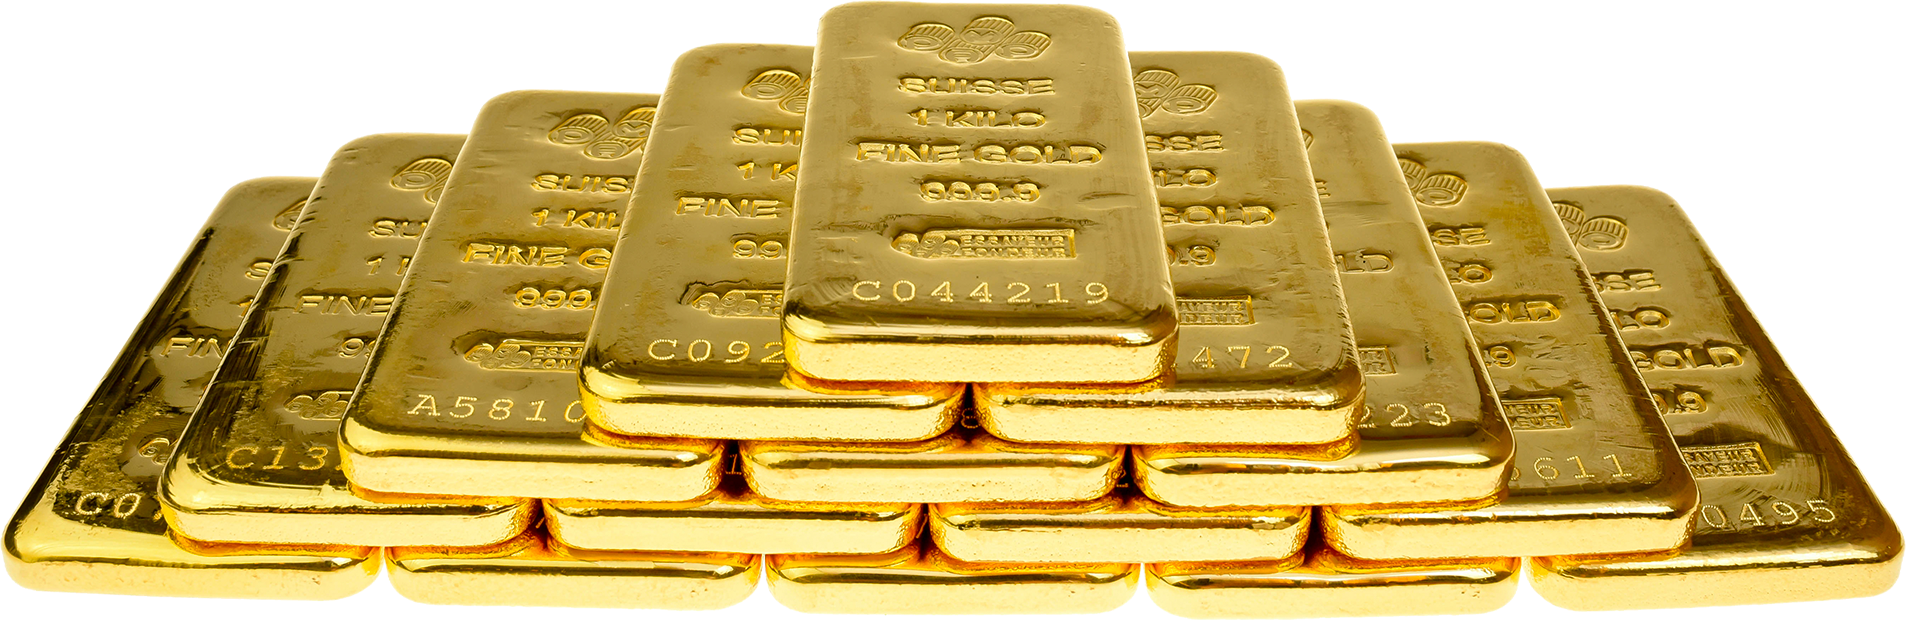 Золото для физических лиц. Gold Bullion мышка цена. Аттракцион слиток золота в Дубае стоимость билета. Сколько стоит поднять в слитку в Дубае.